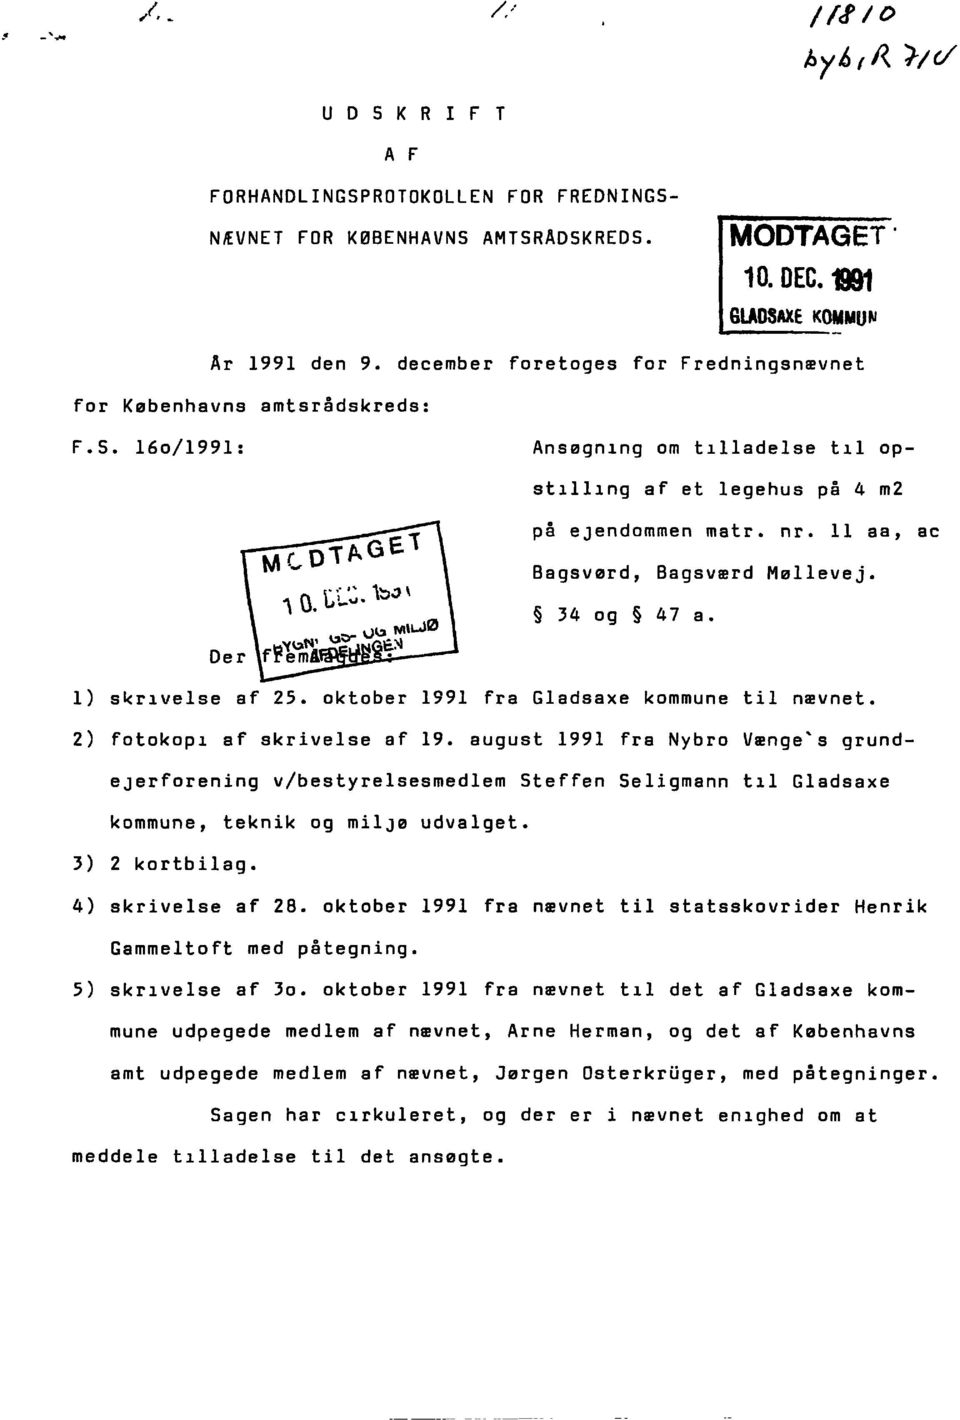 11 aa, ae Bagsvørd, Bagsværd Møllevej. 34 og 47 a. Der 1) skrivelse af 25. oktober 1991 fra Gladsaxe kommune til nævnet. 2) fotokopi af skrivelse af 19.